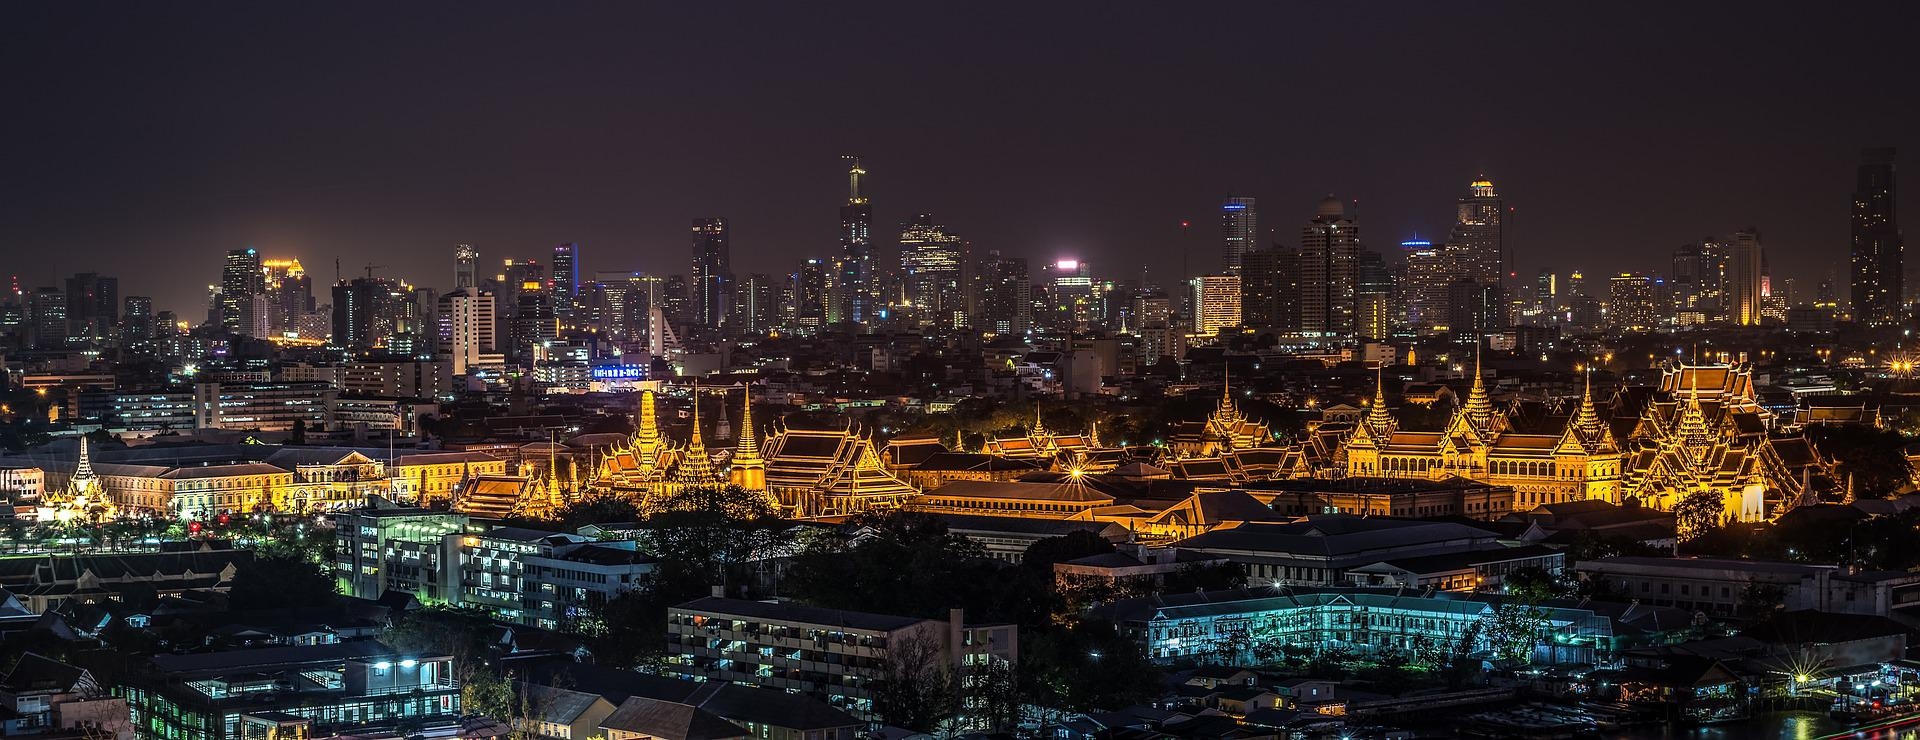 인터파크가 올 여름 인기 해외 여행지는 태국 '방콕'인 것으로 나타났다고 11일 밝혔다./사진제공=픽사베이